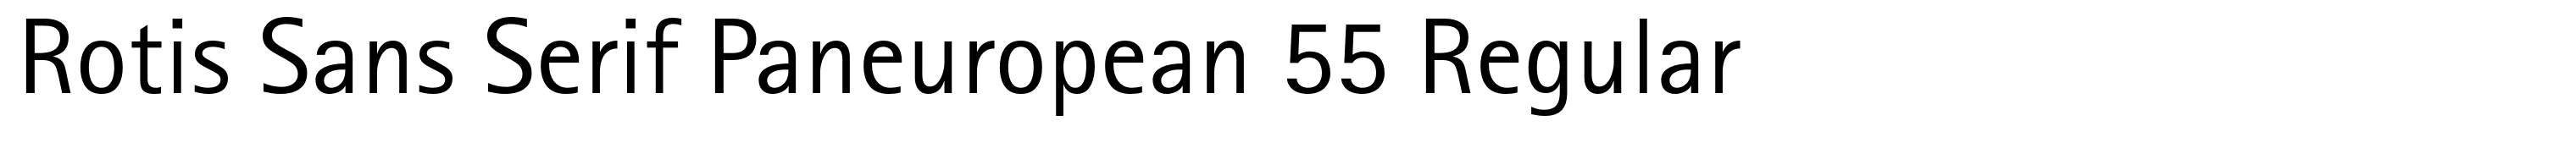 Rotis Sans Serif Paneuropean 55 Regular